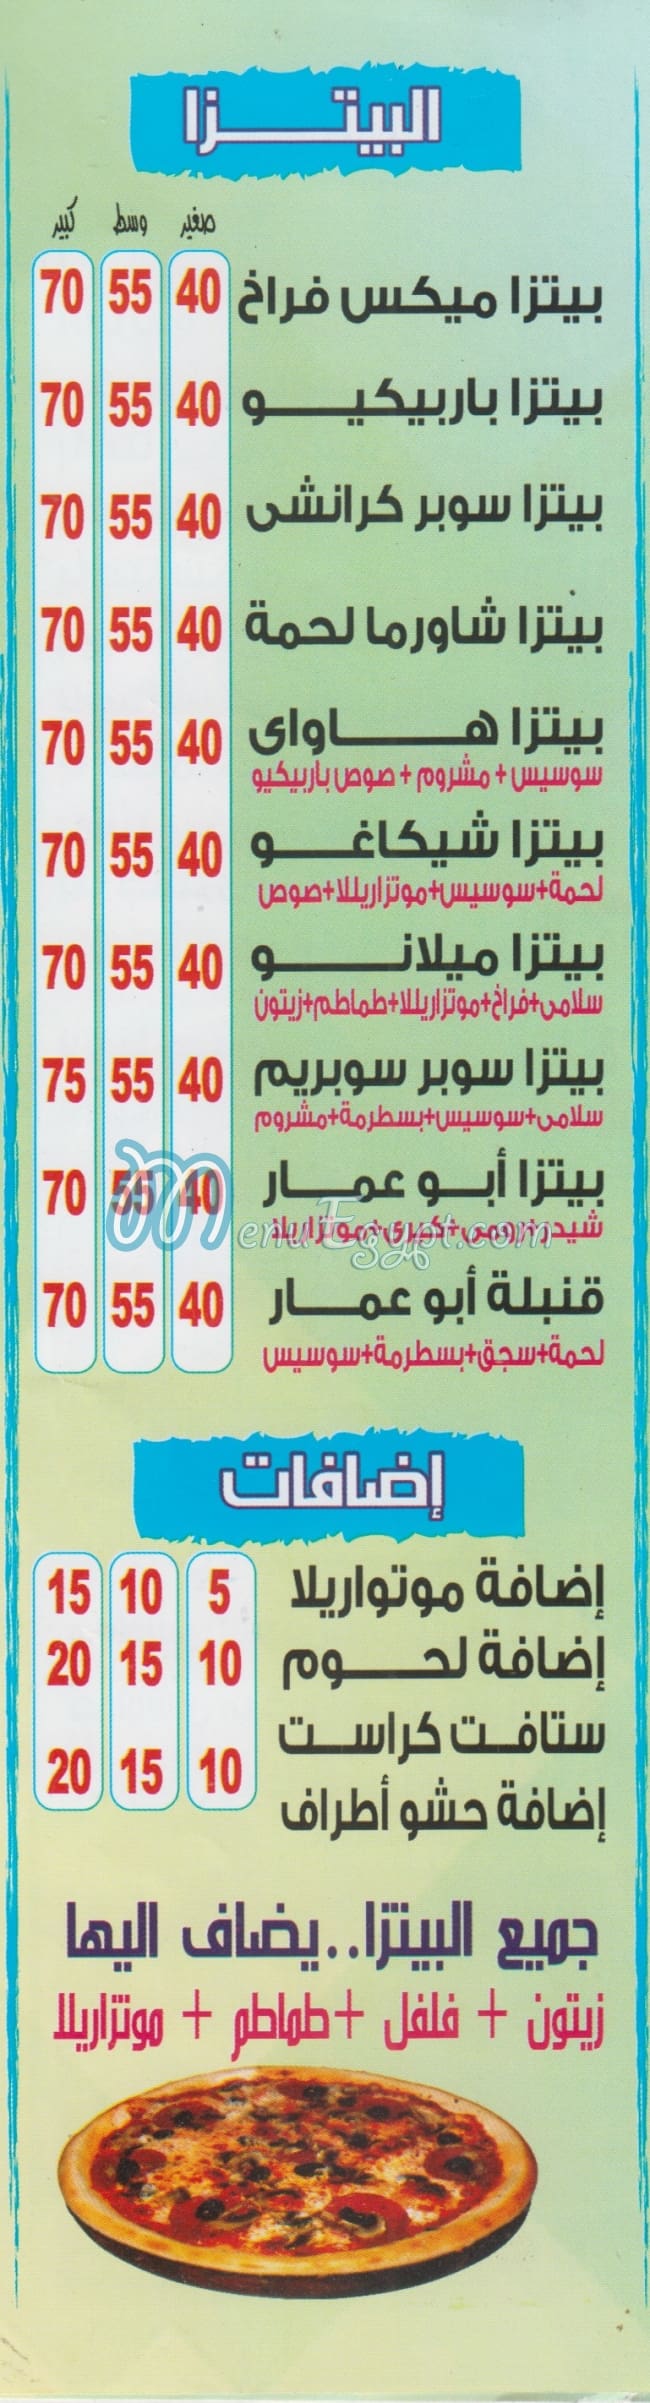 Abo Ammar menu Egypt